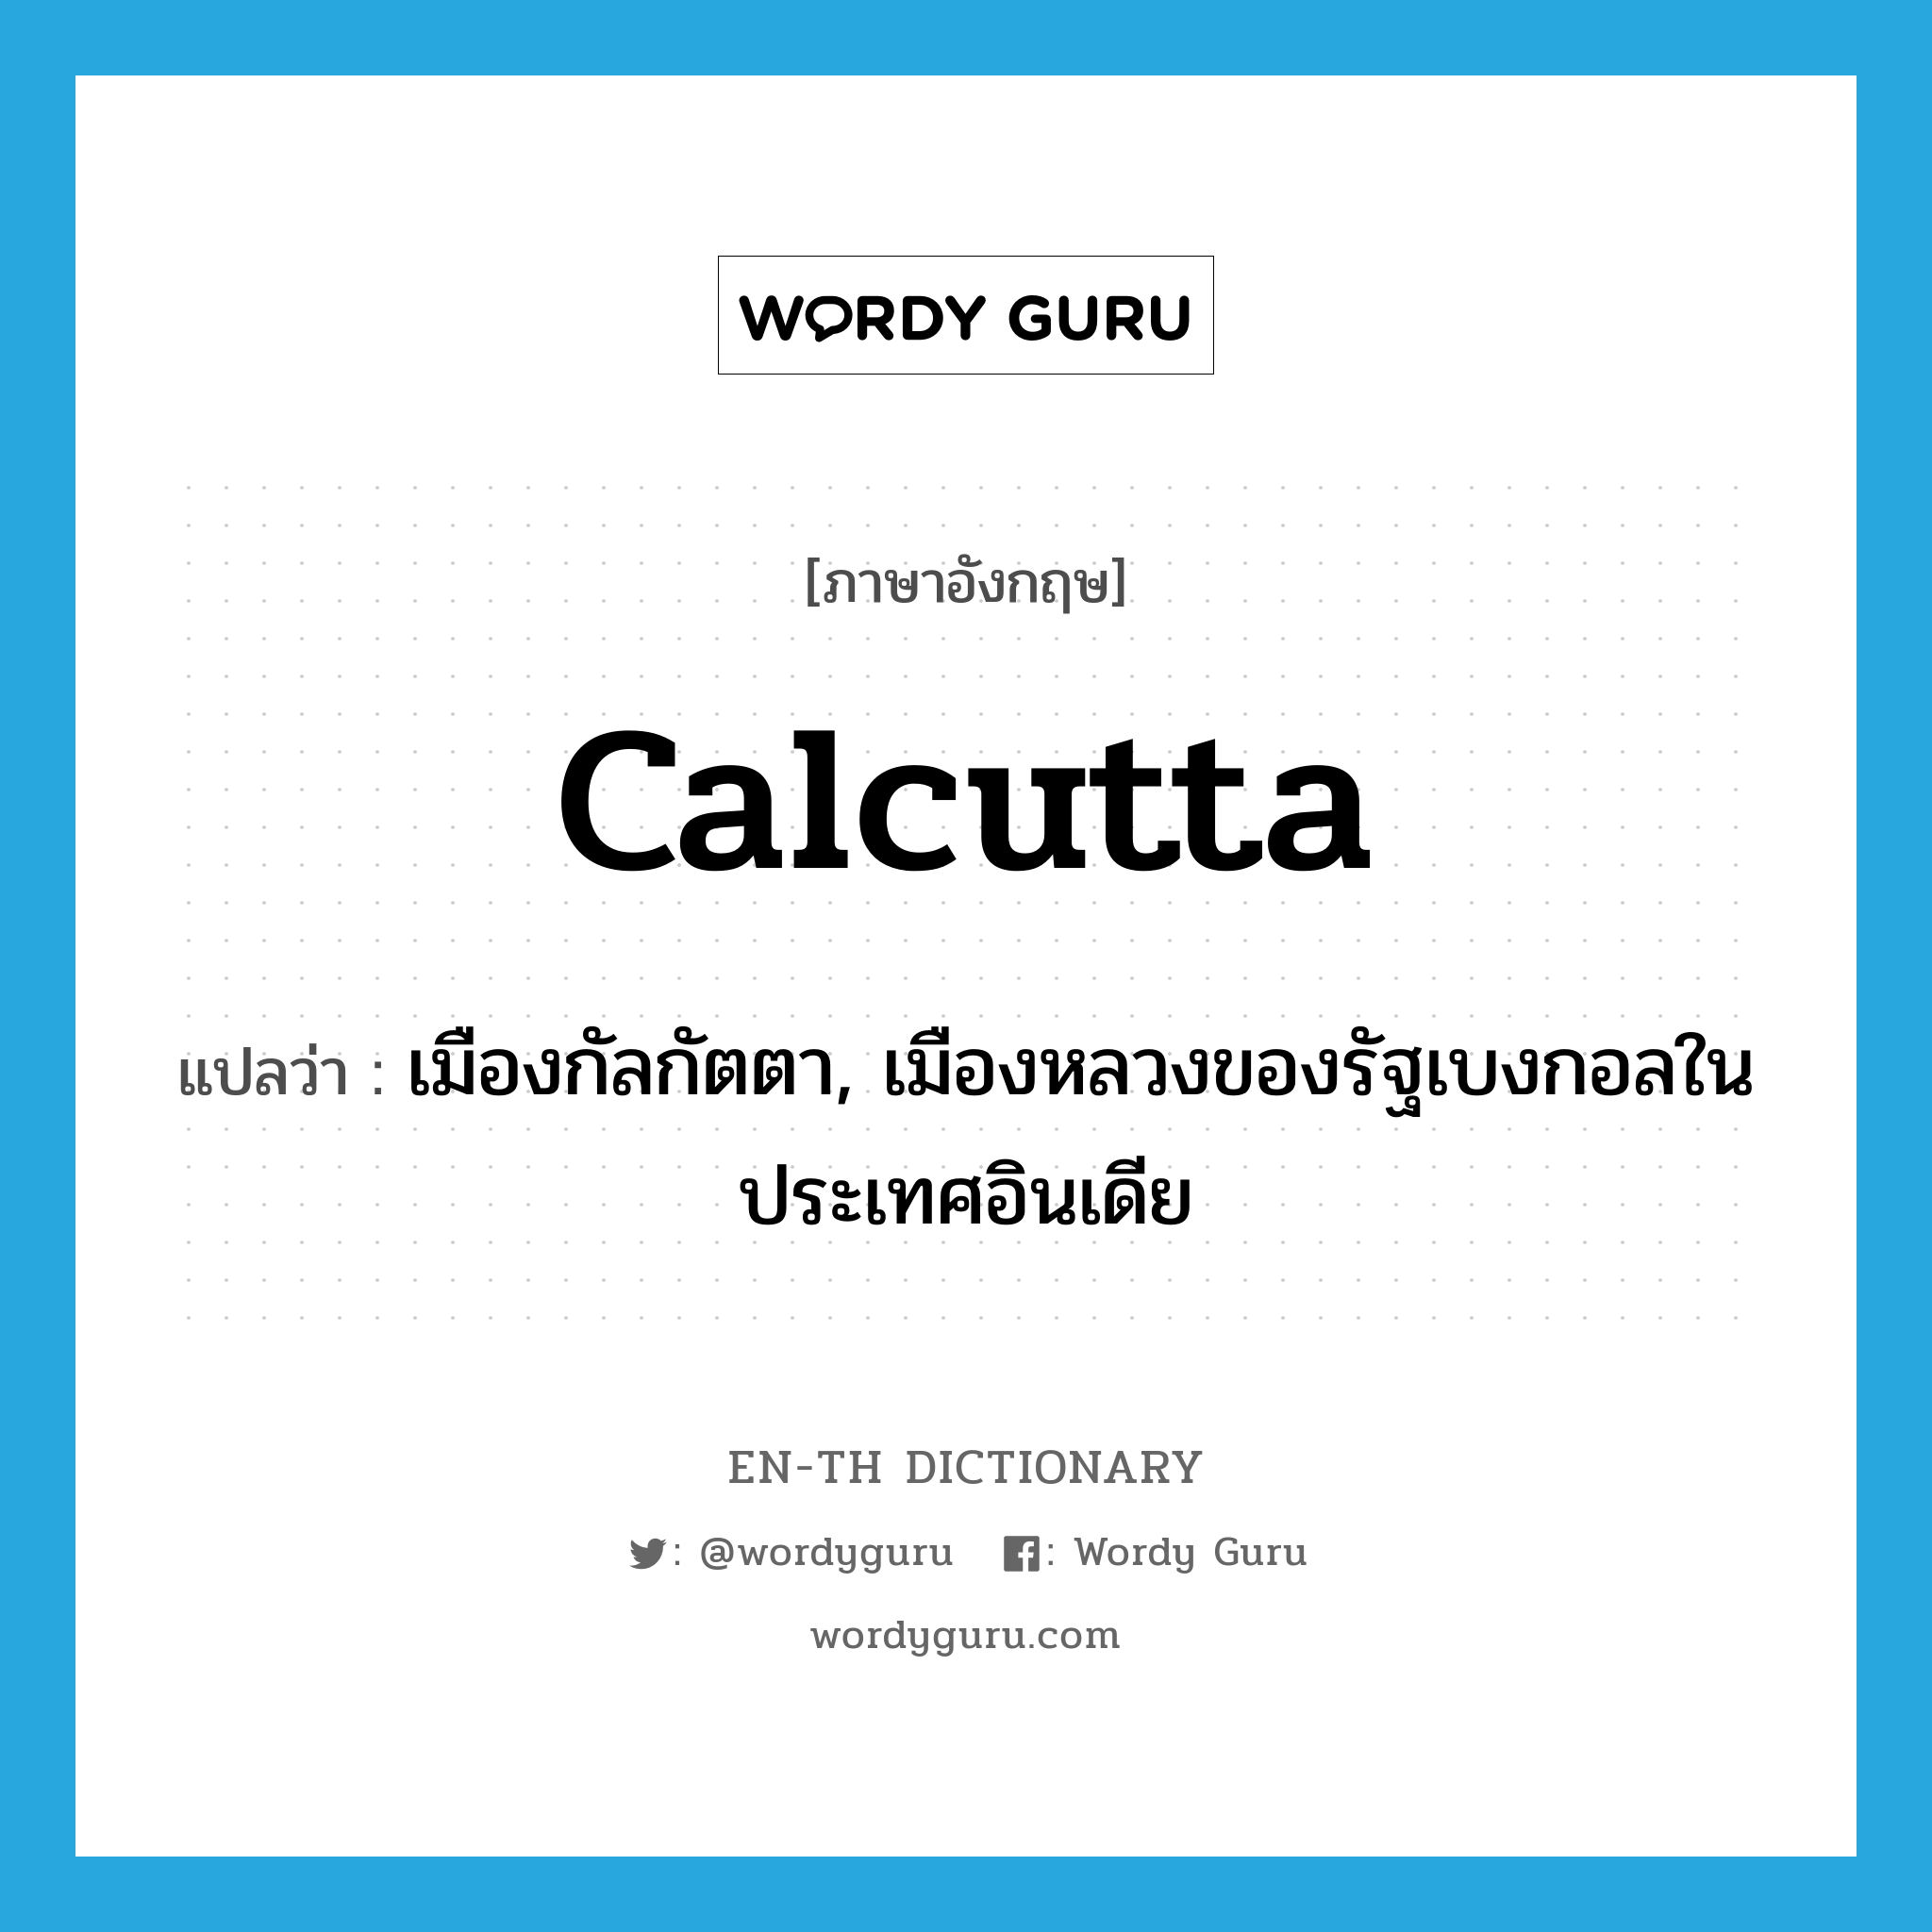 Calcutta แปลว่า?, คำศัพท์ภาษาอังกฤษ Calcutta แปลว่า เมืองกัลกัตตา, เมืองหลวงของรัฐเบงกอลในประเทศอินเดีย ประเภท N หมวด N